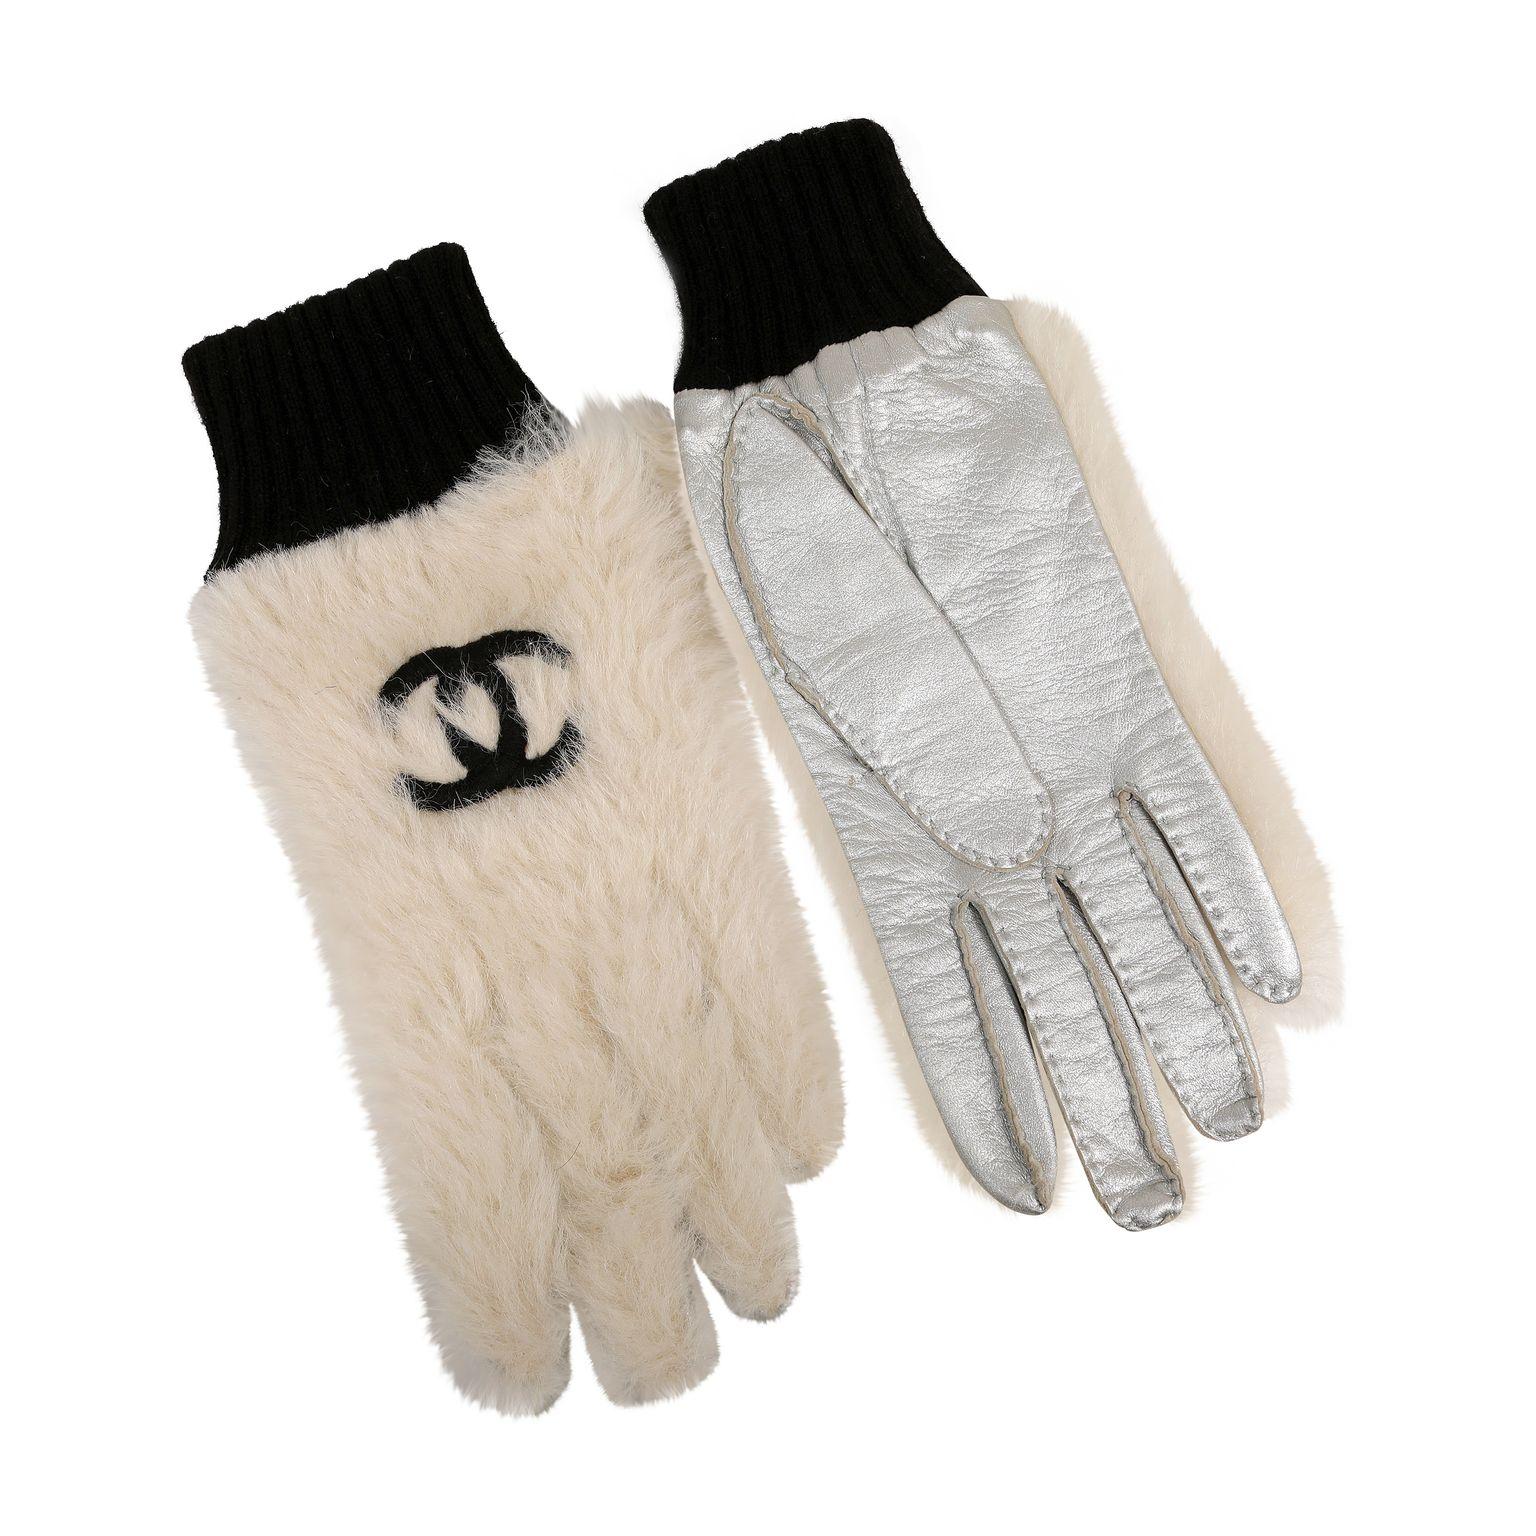 Ces authentiques gants CC en fourrure blanche de Chanel sont impeccables.  Gants blancs d'hiver avec broderie CC noire à emboîtement et manchettes noires en tricot.  Cuir métallisé argenté sur la paume.   Pochette ou boîte incluse.  

PBF 13739
